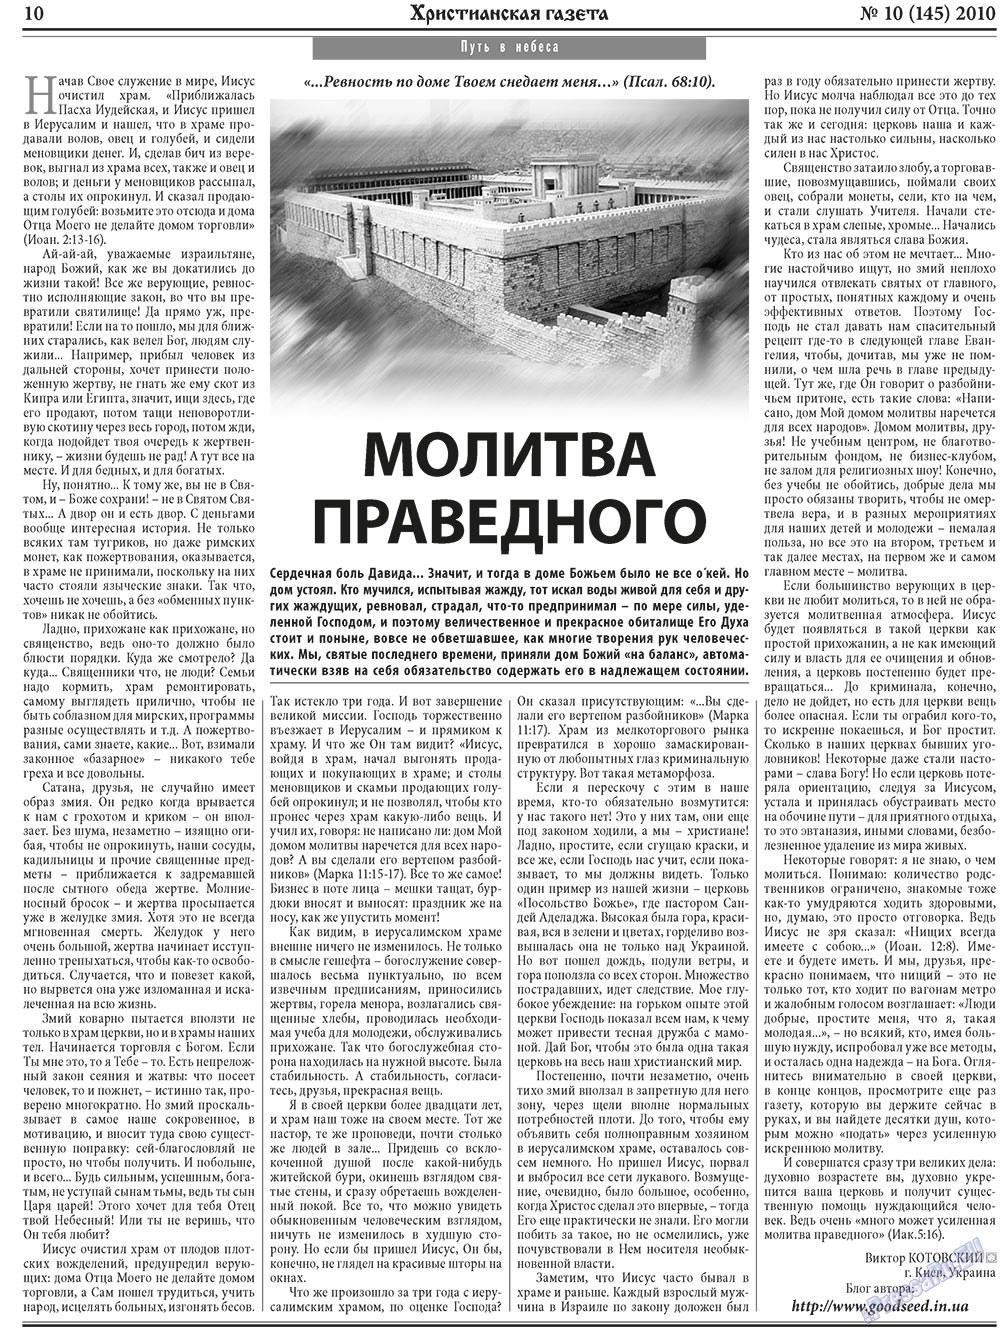 Христианская газета, газета. 2010 №10 стр.10